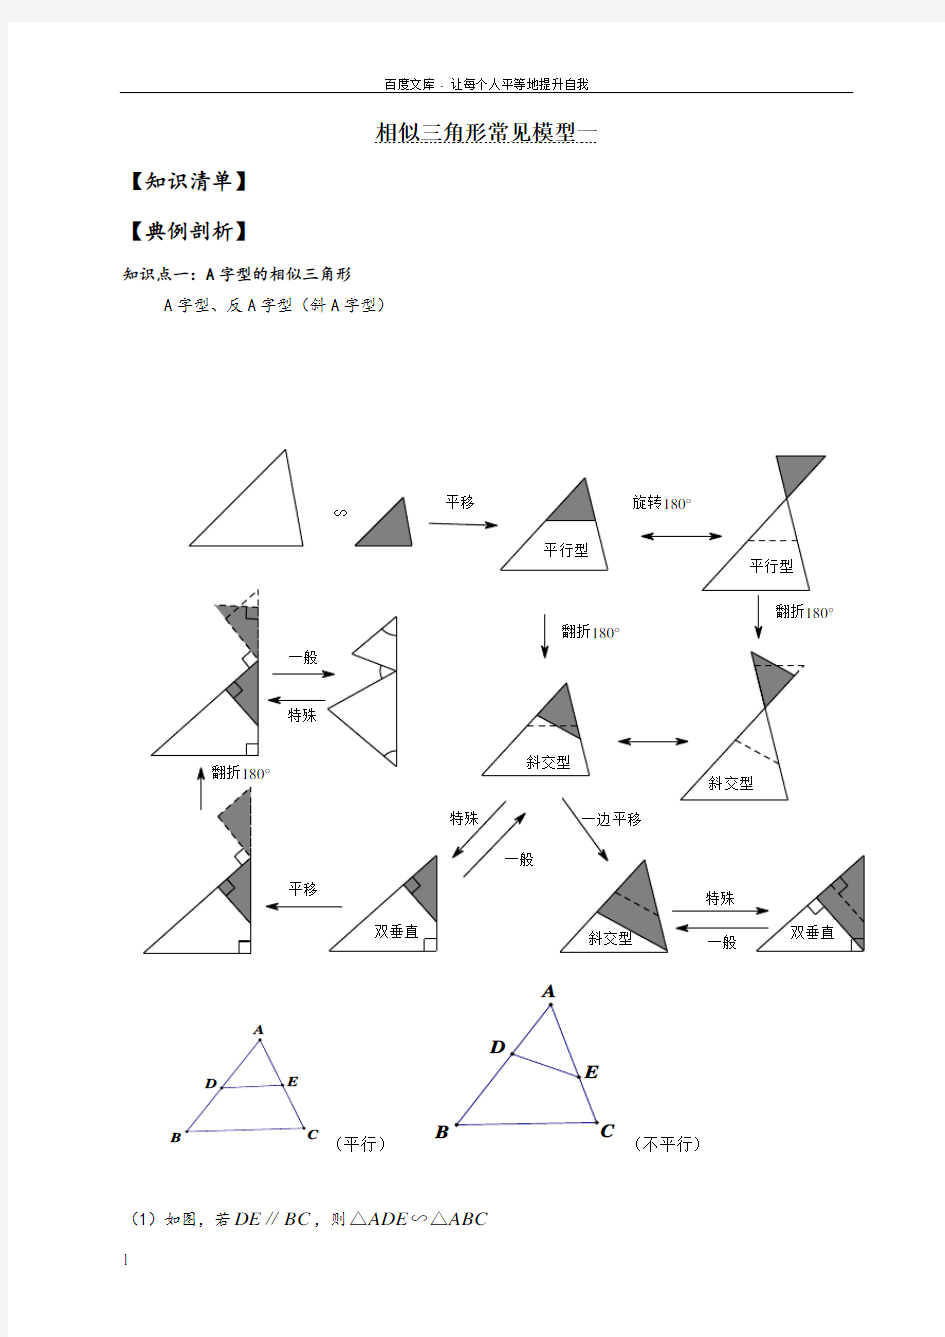 初三数学相似三角形常见模型(供参考)